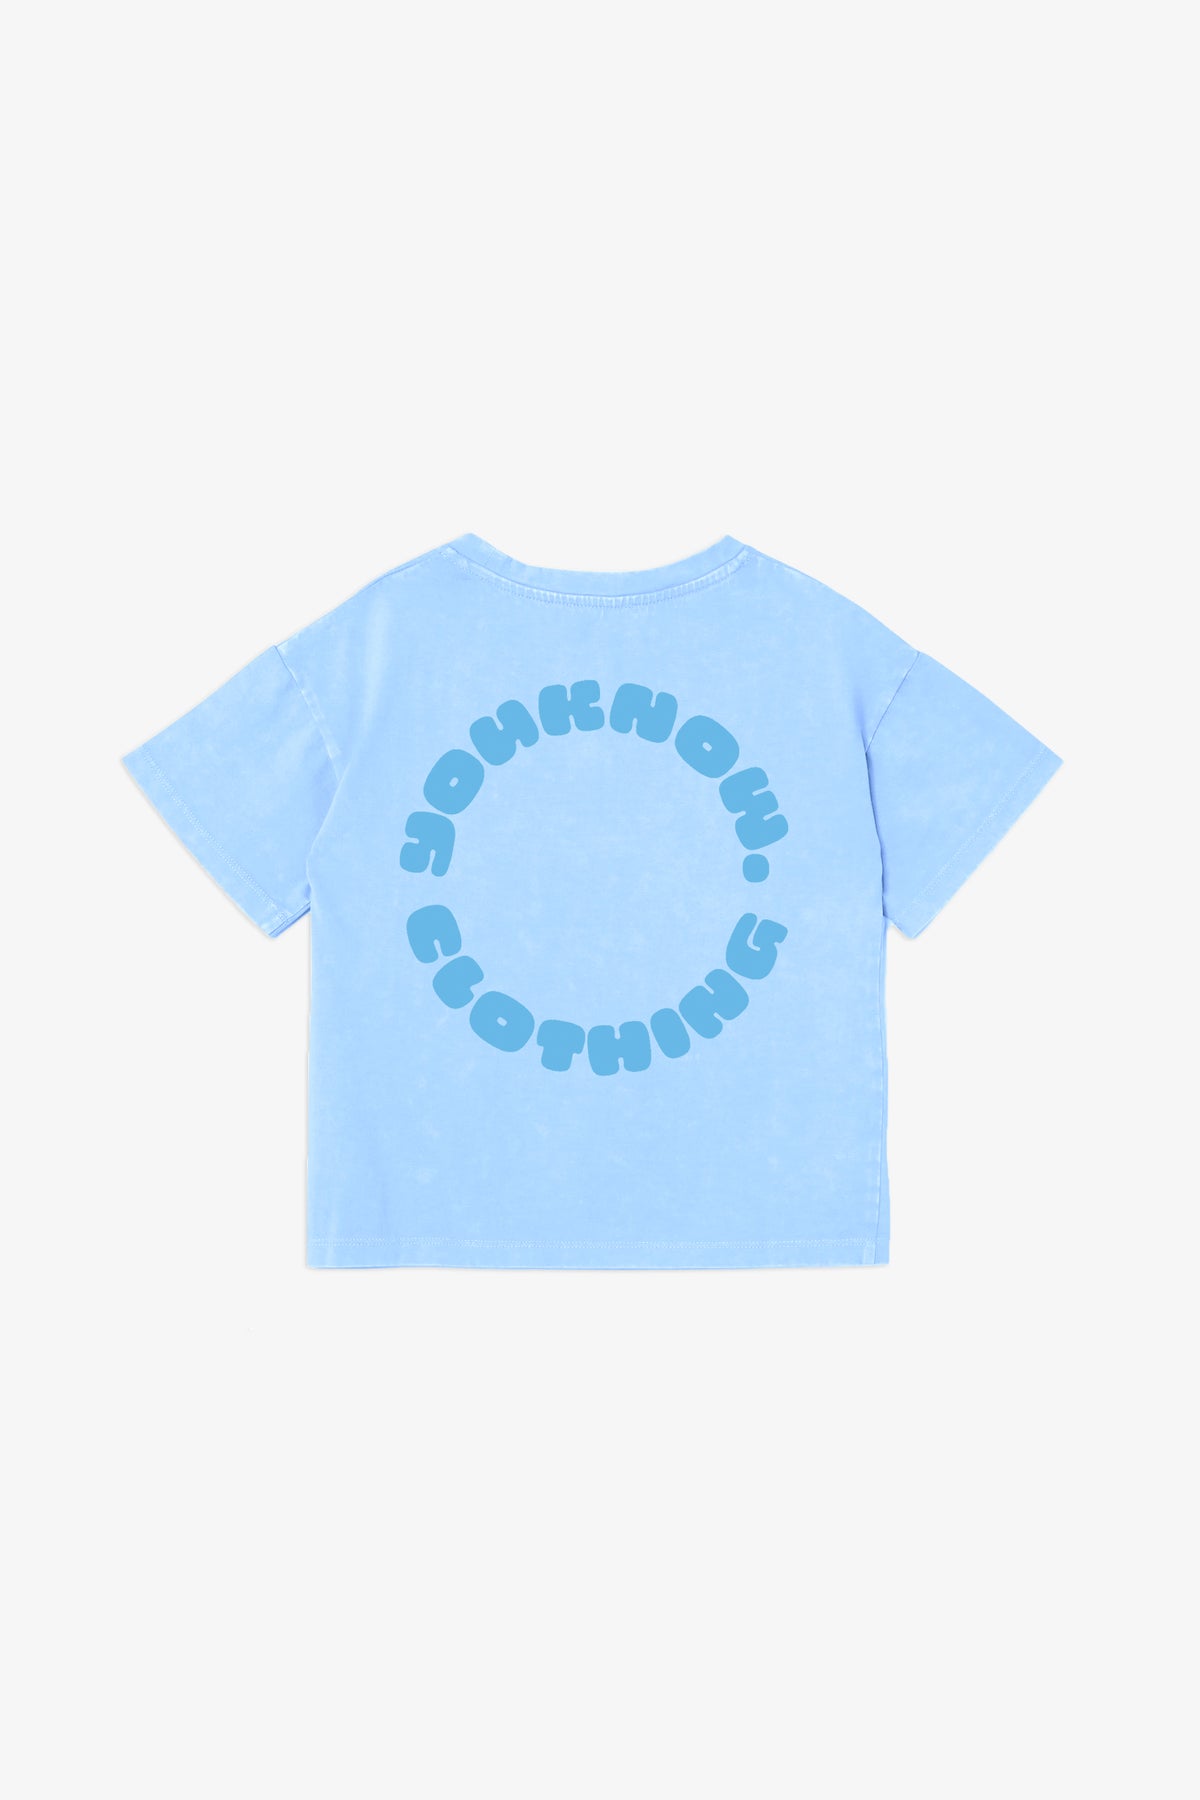 KIDS CIRCLE TEE | BLUE